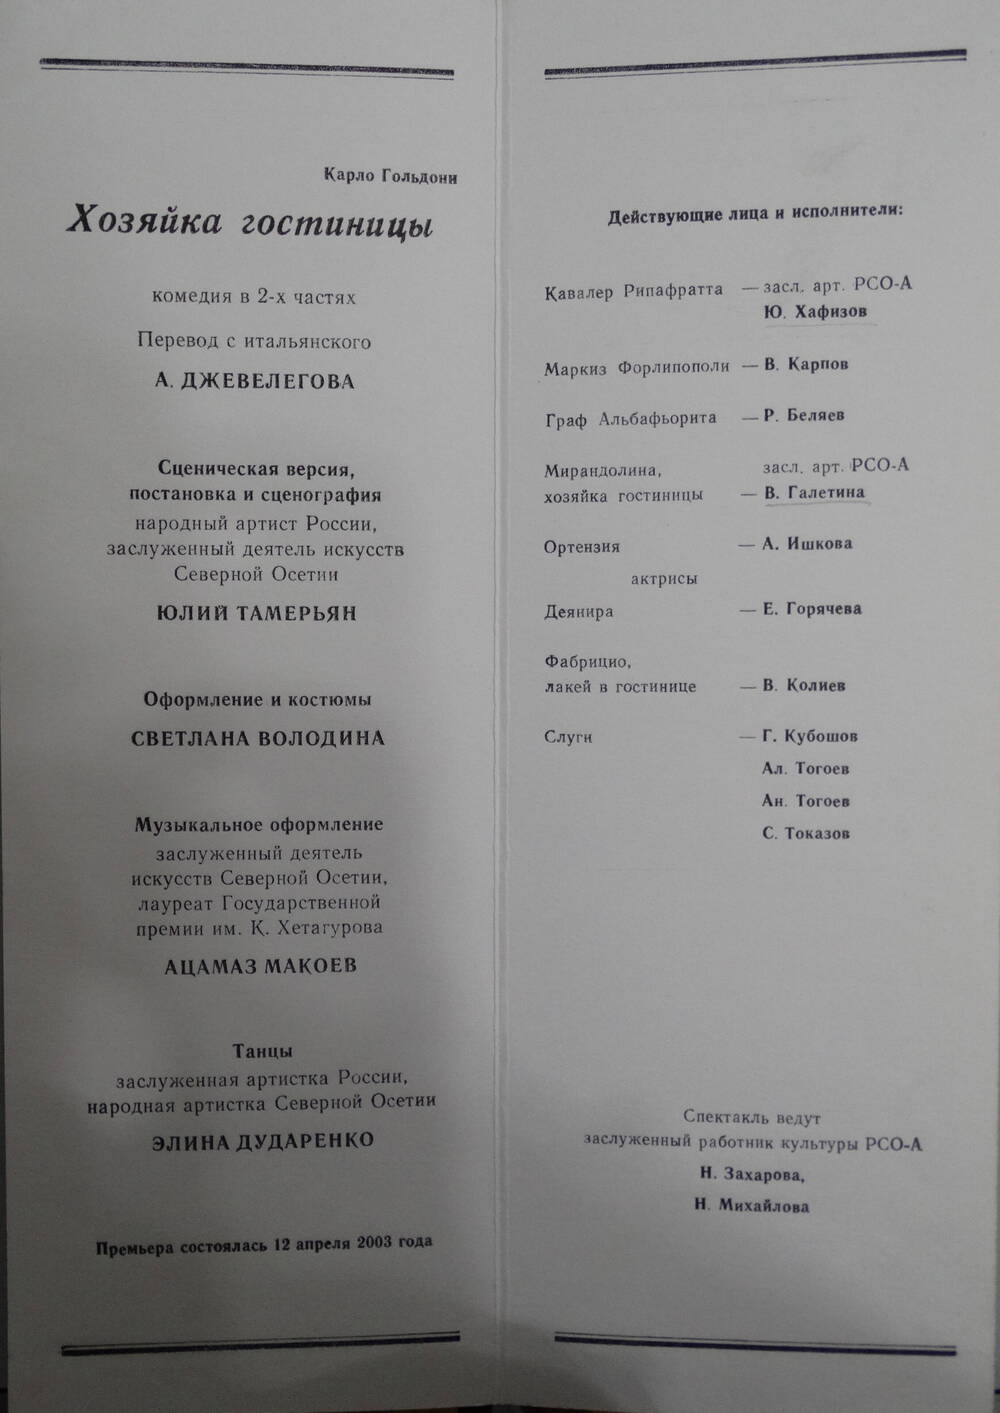 Программа Русского театра. Карло Гольдони Хозяйка гостиницы, реж. Ю.Тамерьян, 2003 г.